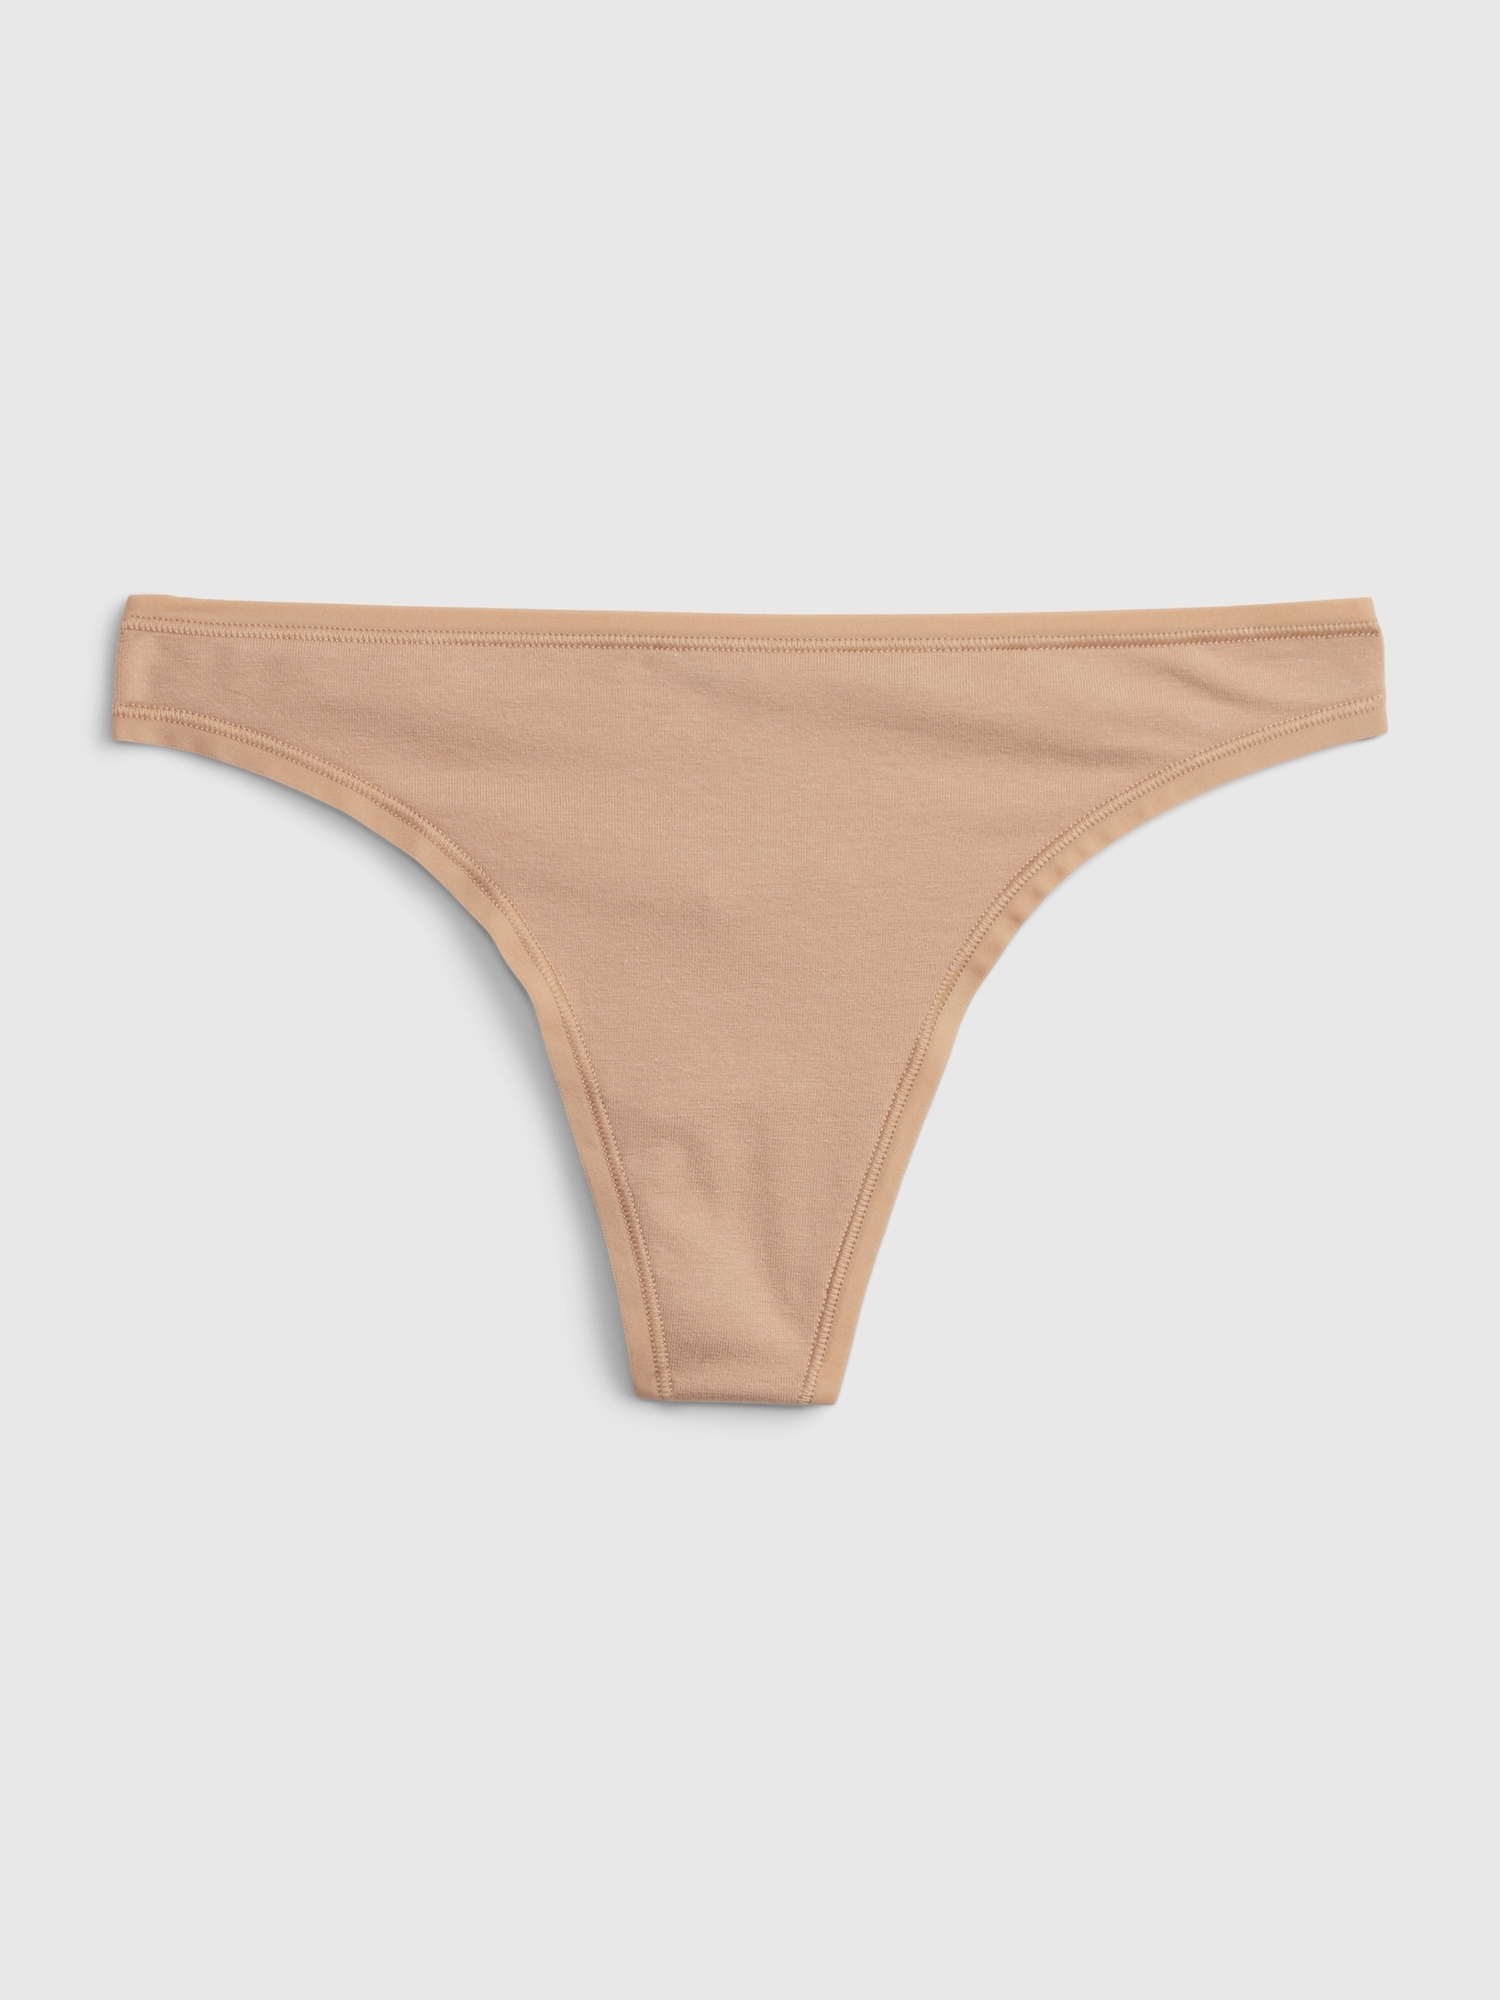 Sngxgn Organic Cotton Underwear Womens Women's Cotton Stretch Underwear -  Brief Panties Hot Pink XL 